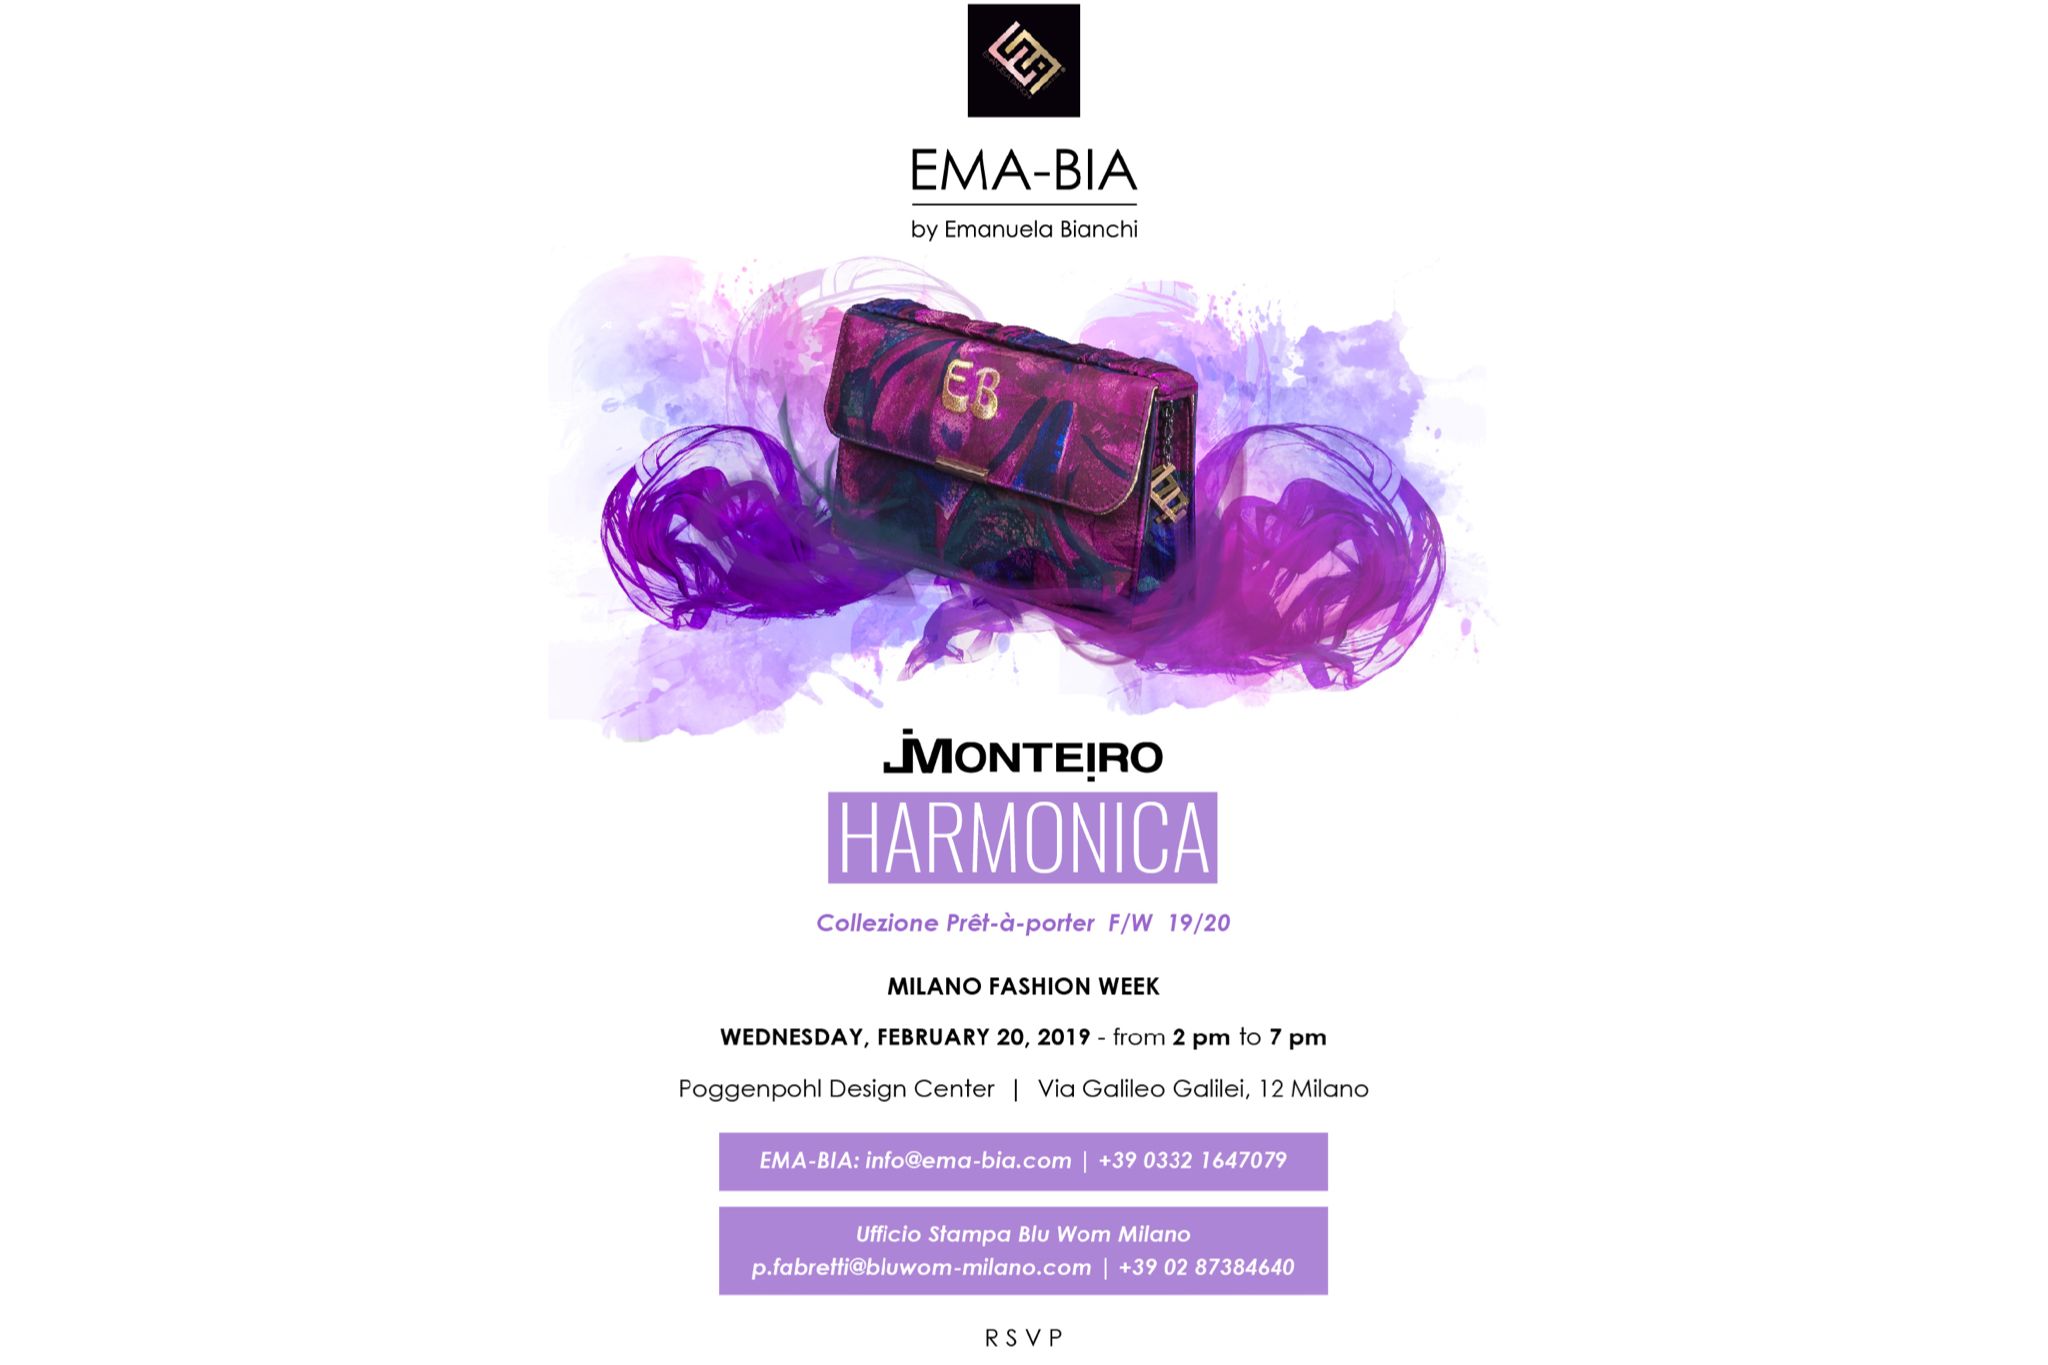 EMA-BIA presente alla Milano Fashion Week con l’evento esclusivo “Harmonica “